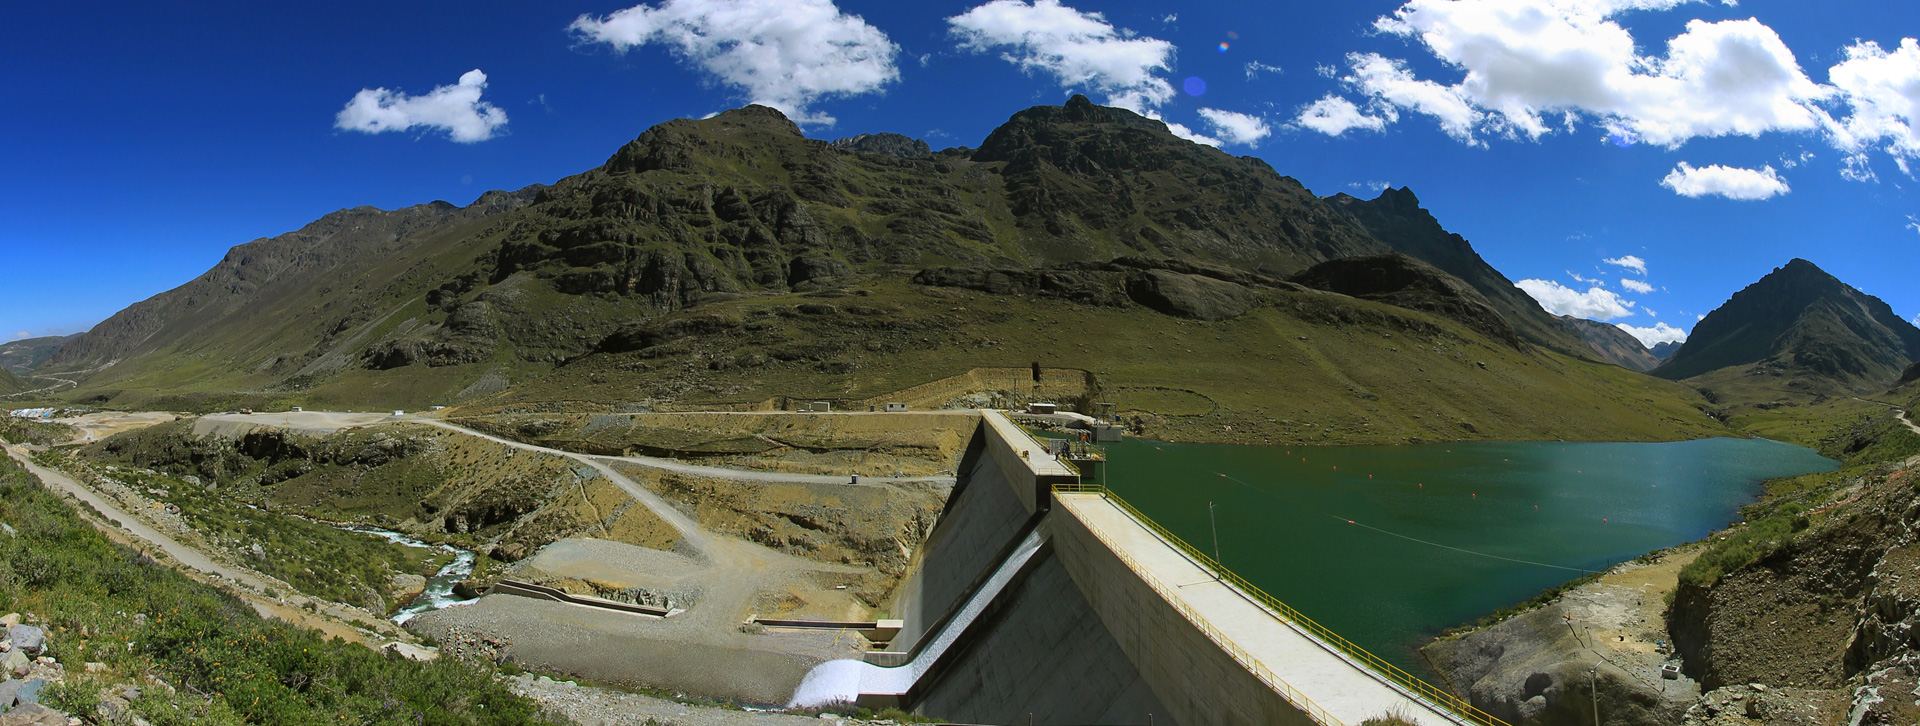 Central hidroeléctrica Huanza 1